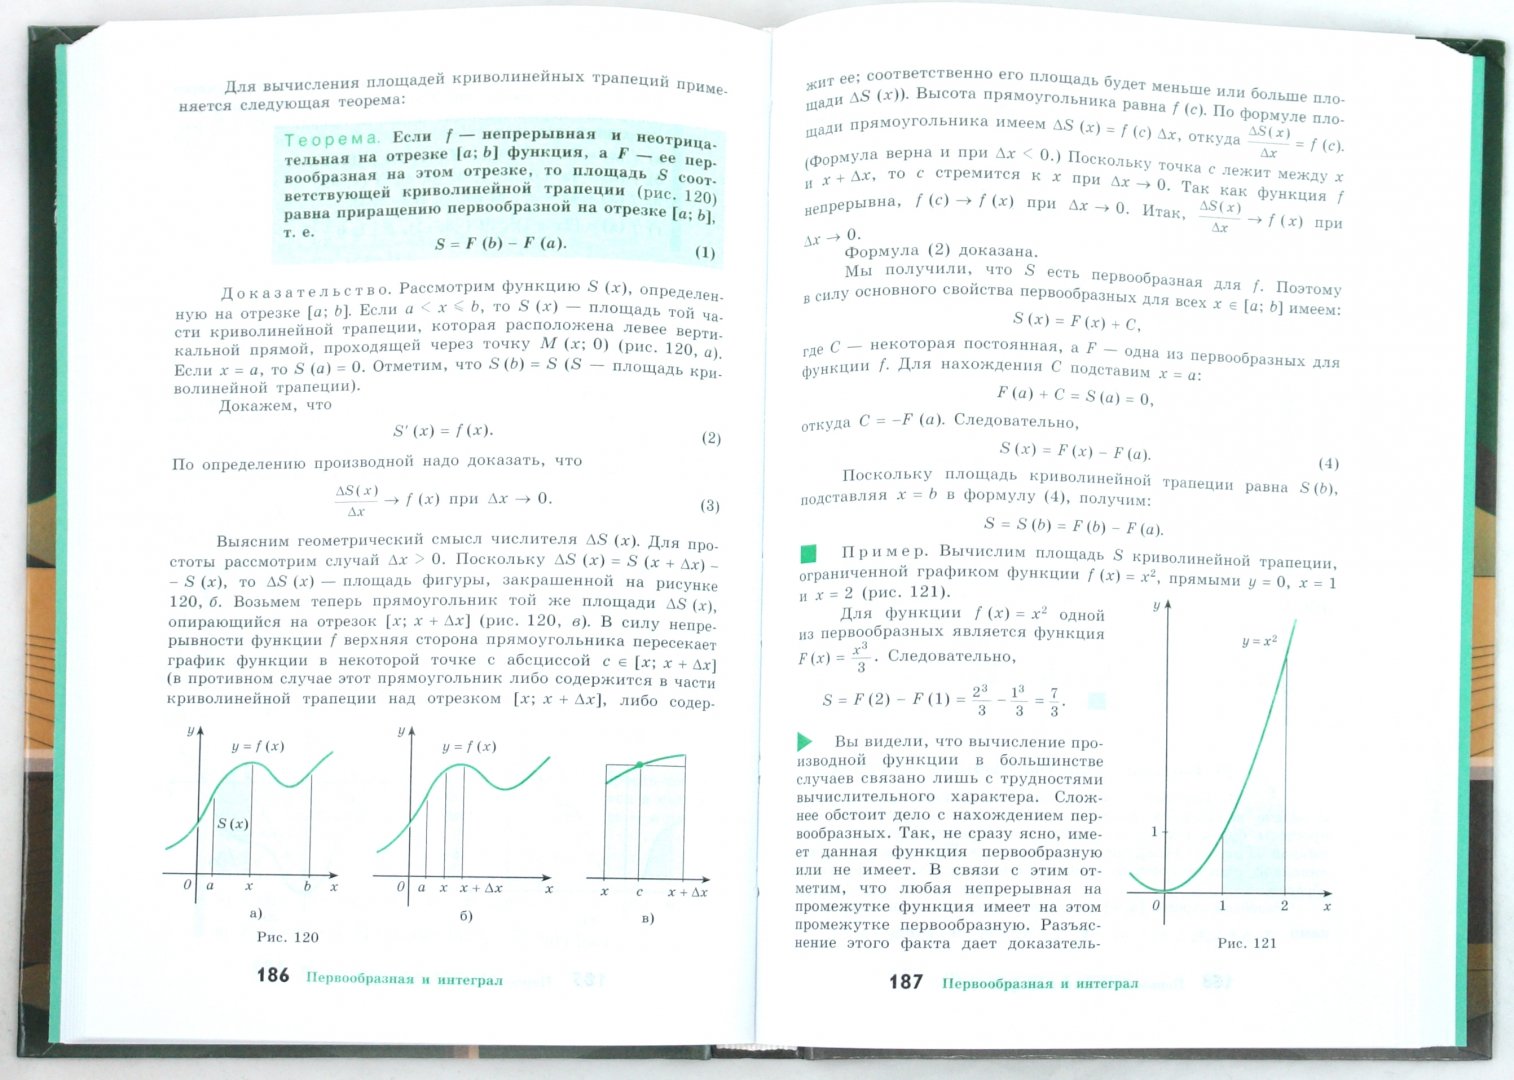 Иллюстрация 1 из 18 для Алгебра и начала математического анализа. Учебник для общеобразоват. учреждений. 10-11 классы (+CD) - Колмогоров, Дудницын, Абрамов | Лабиринт - книги. Источник: Лабиринт